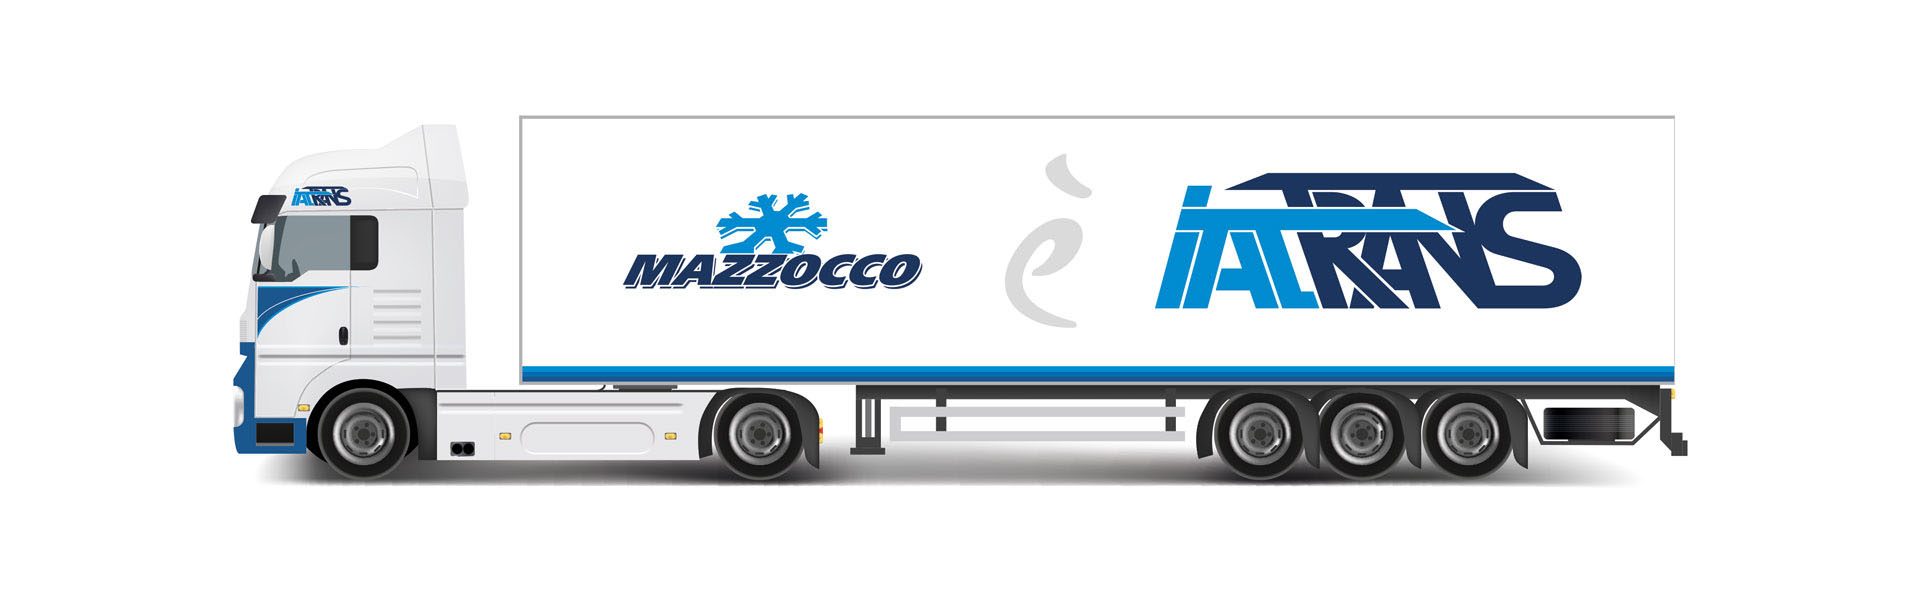 Camion Trasporti Mazzocco Italtrans